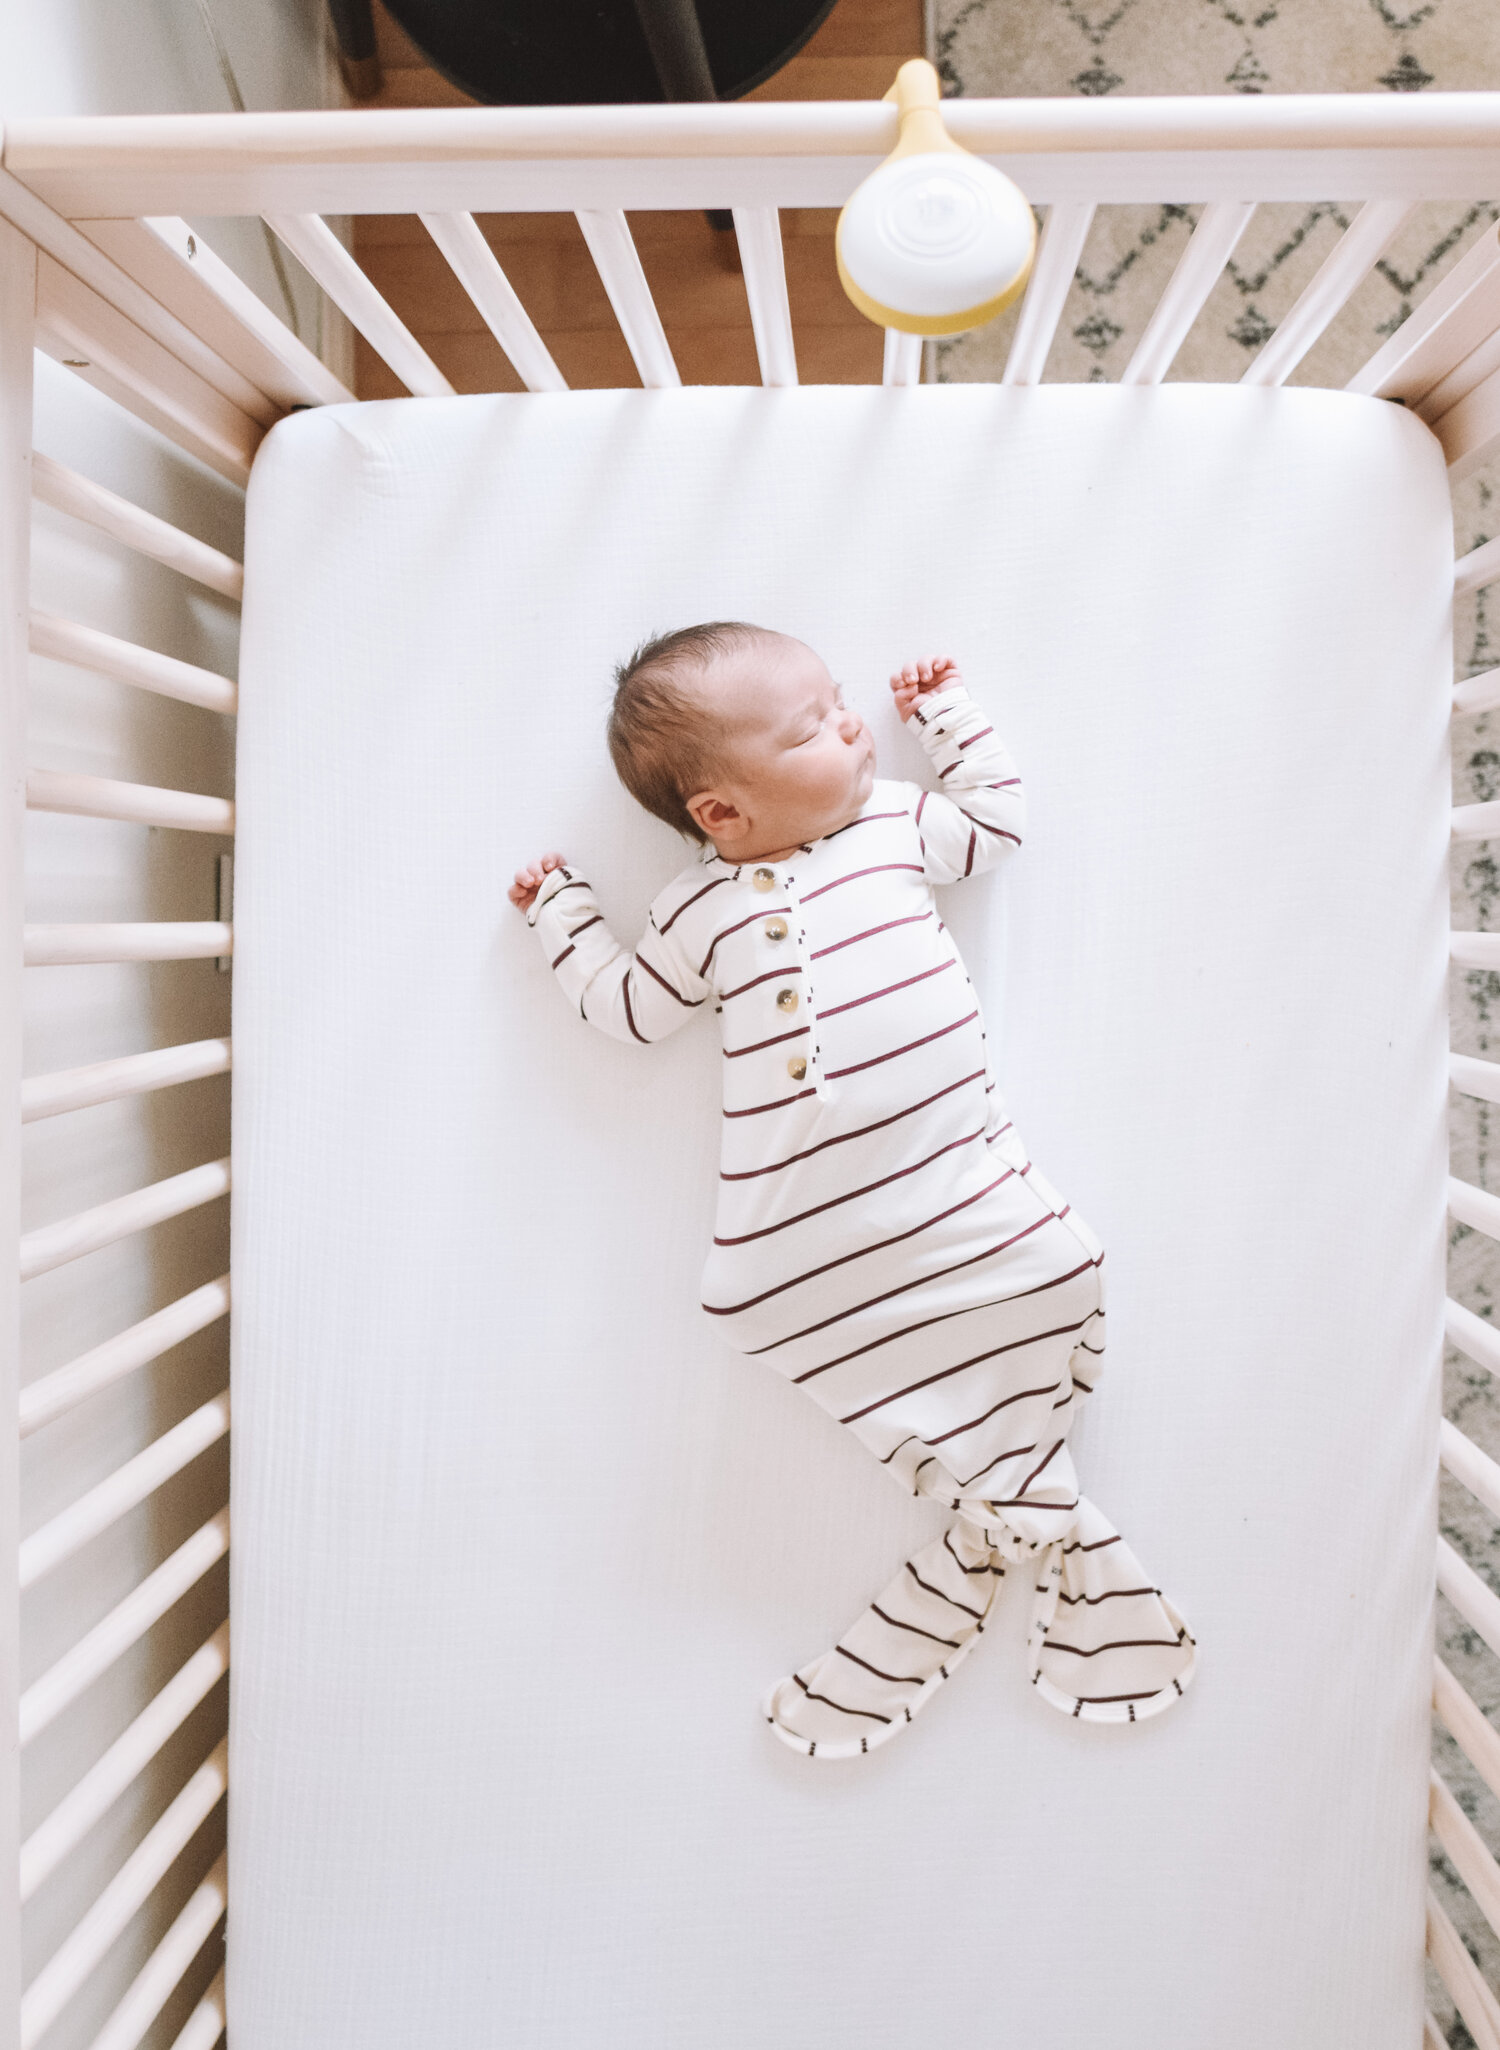 how long do a baby sleep in a crib